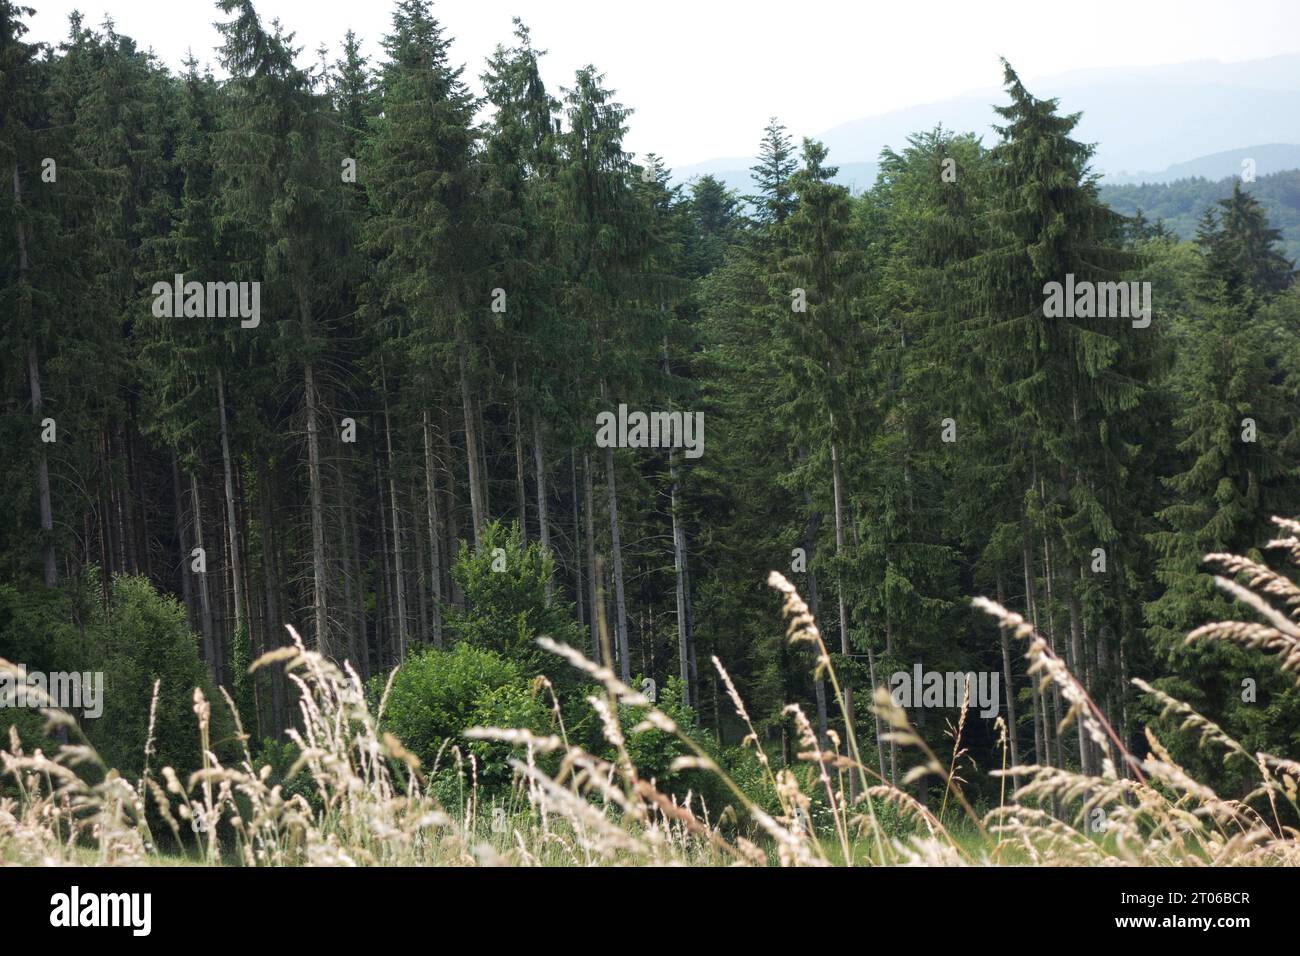 Aufforstung oder Wiederaufforstung in Einem Wald, Baumpflanzung und Wachstum Aufforstung oder Wiederaufforstung in Einem Wald Credit: Imago/Alamy Live News Stockfoto